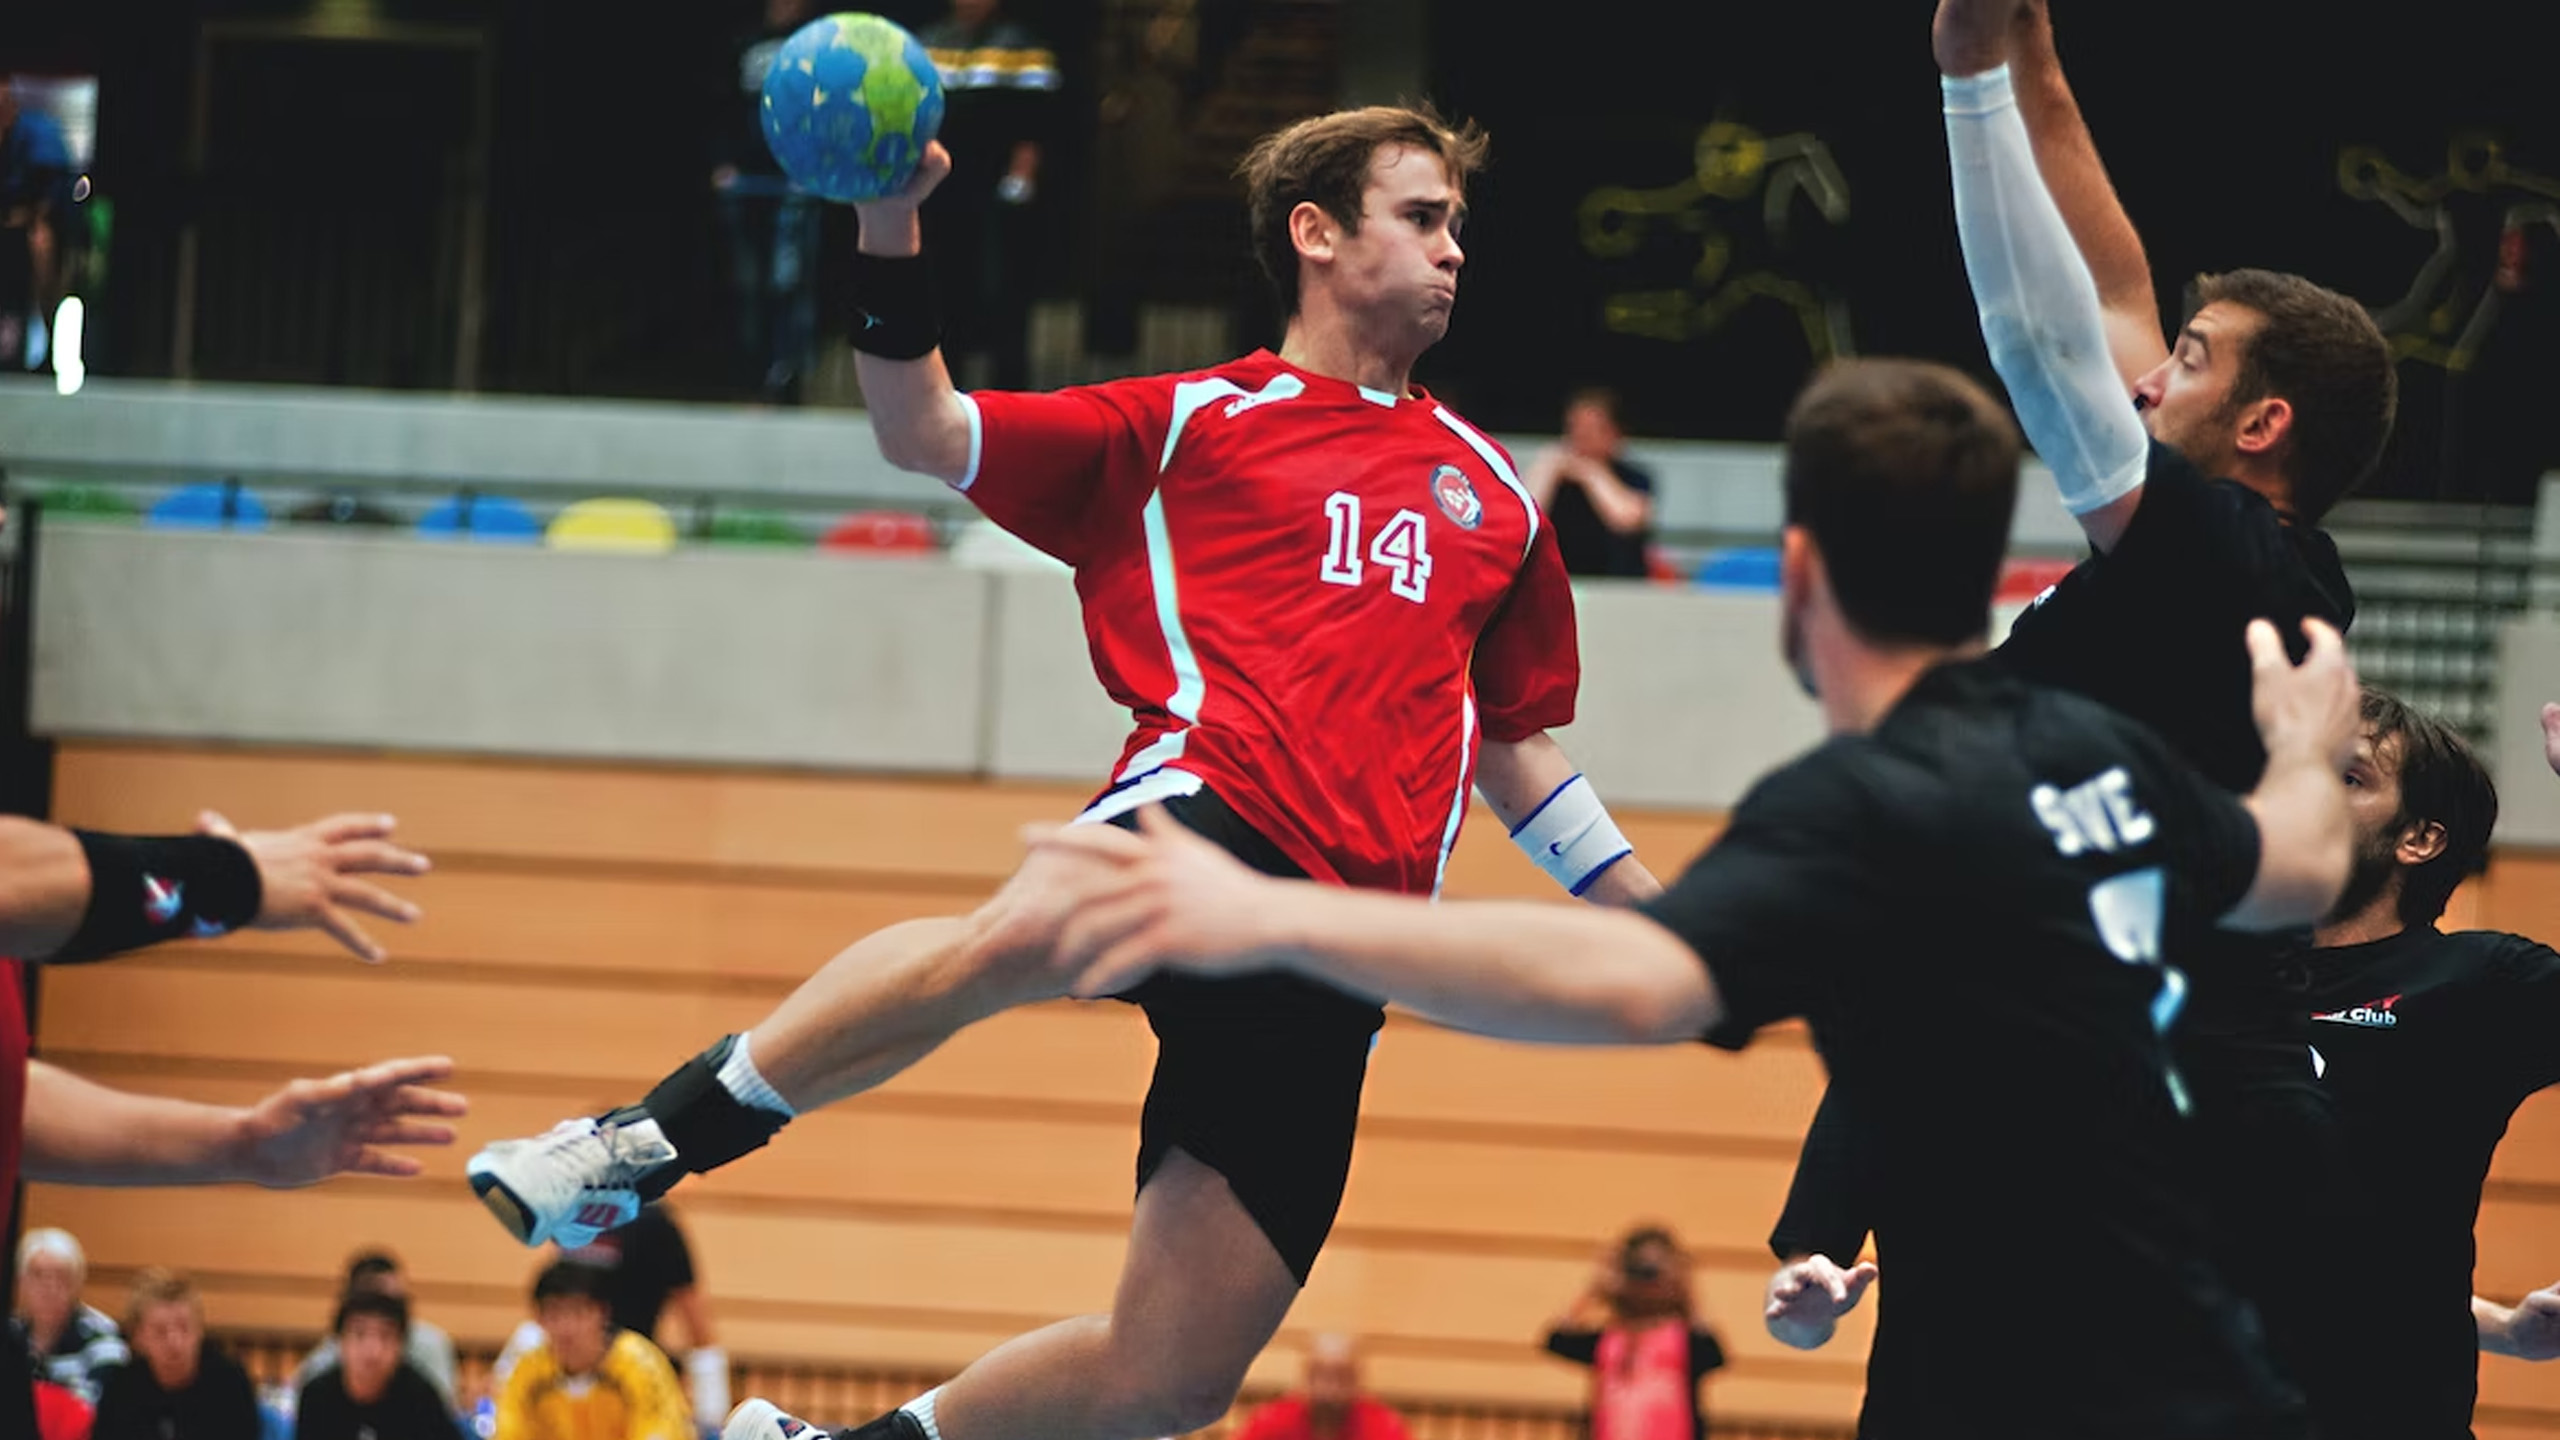 Man jumping playing handball